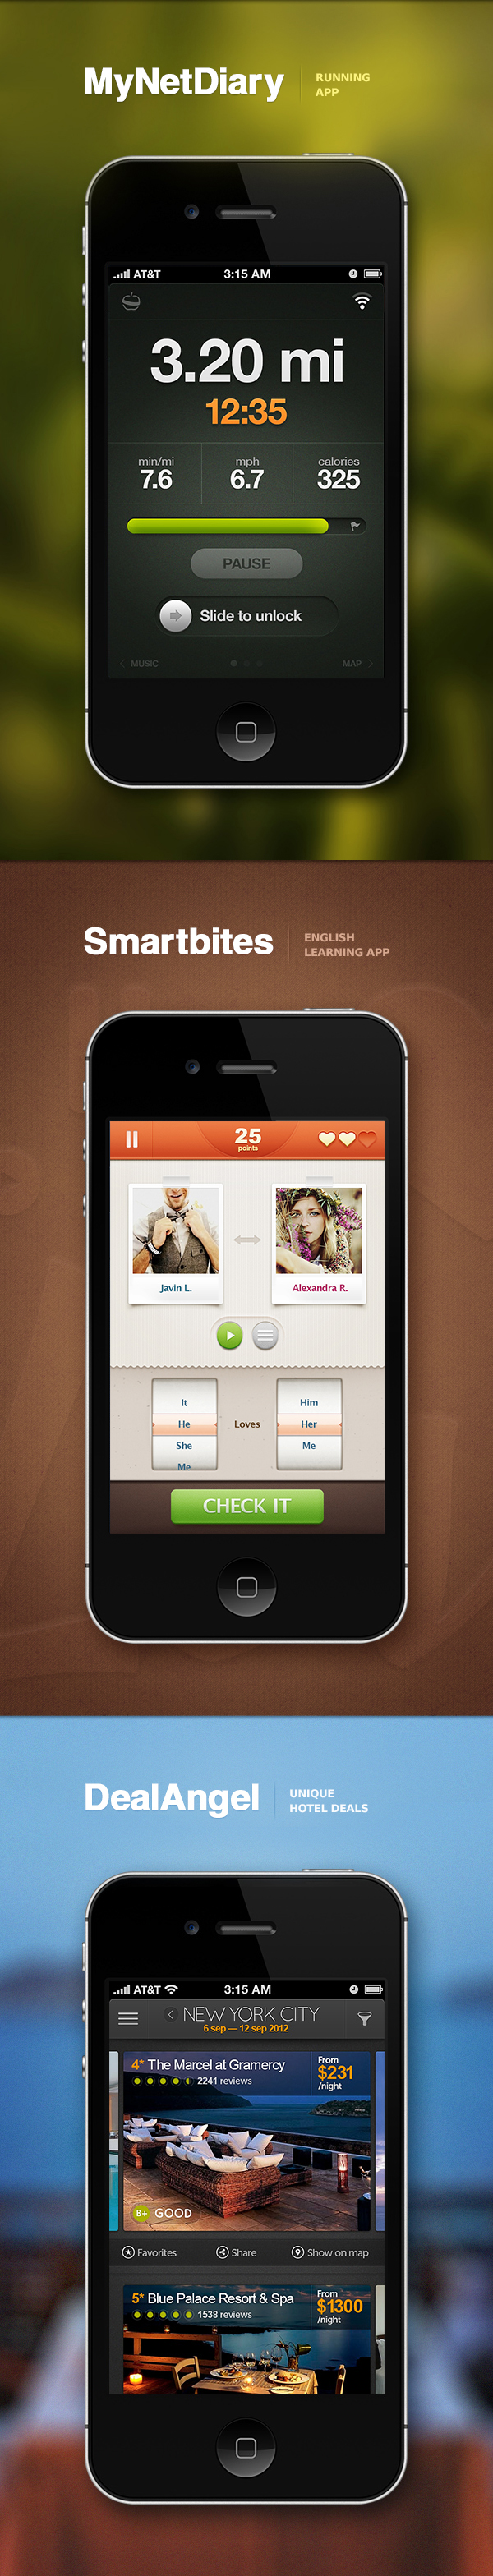 2013 App